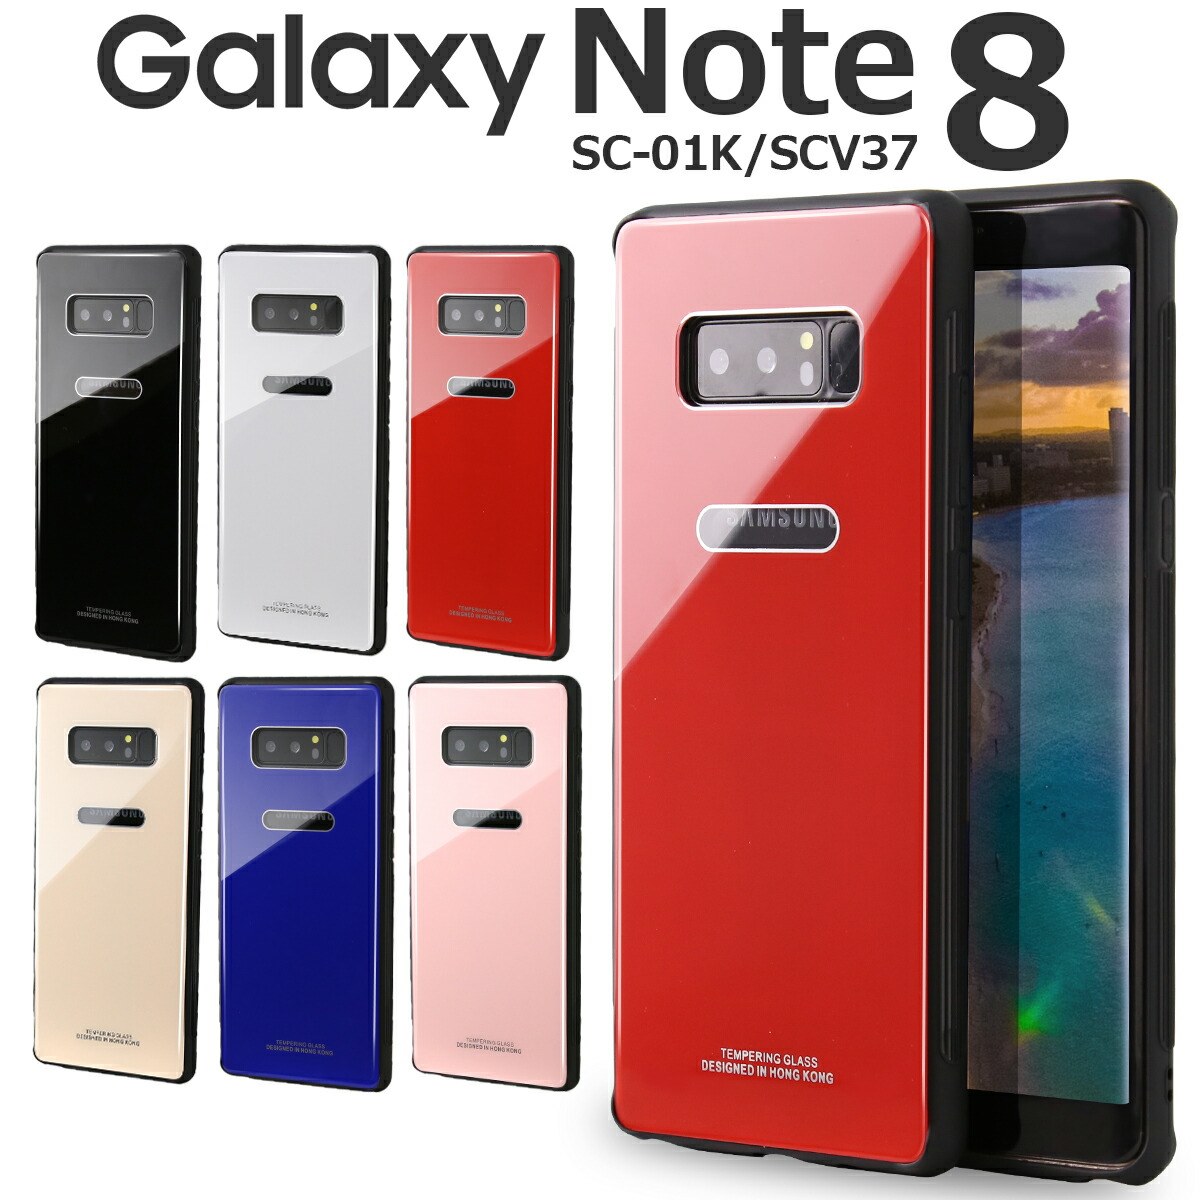 【最大30 OFFクーポン】 Galaxy Note8 ケース Galaxy Note8 カバー Galaxy Note8 sc-01k ケース スマホケース 韓国 SC-01K SCV37 スマホ ケース カバー 背面9Hガラスケース クリスタルケース スマホケース かっこいい おしゃれ スマホカバー シンプル sale